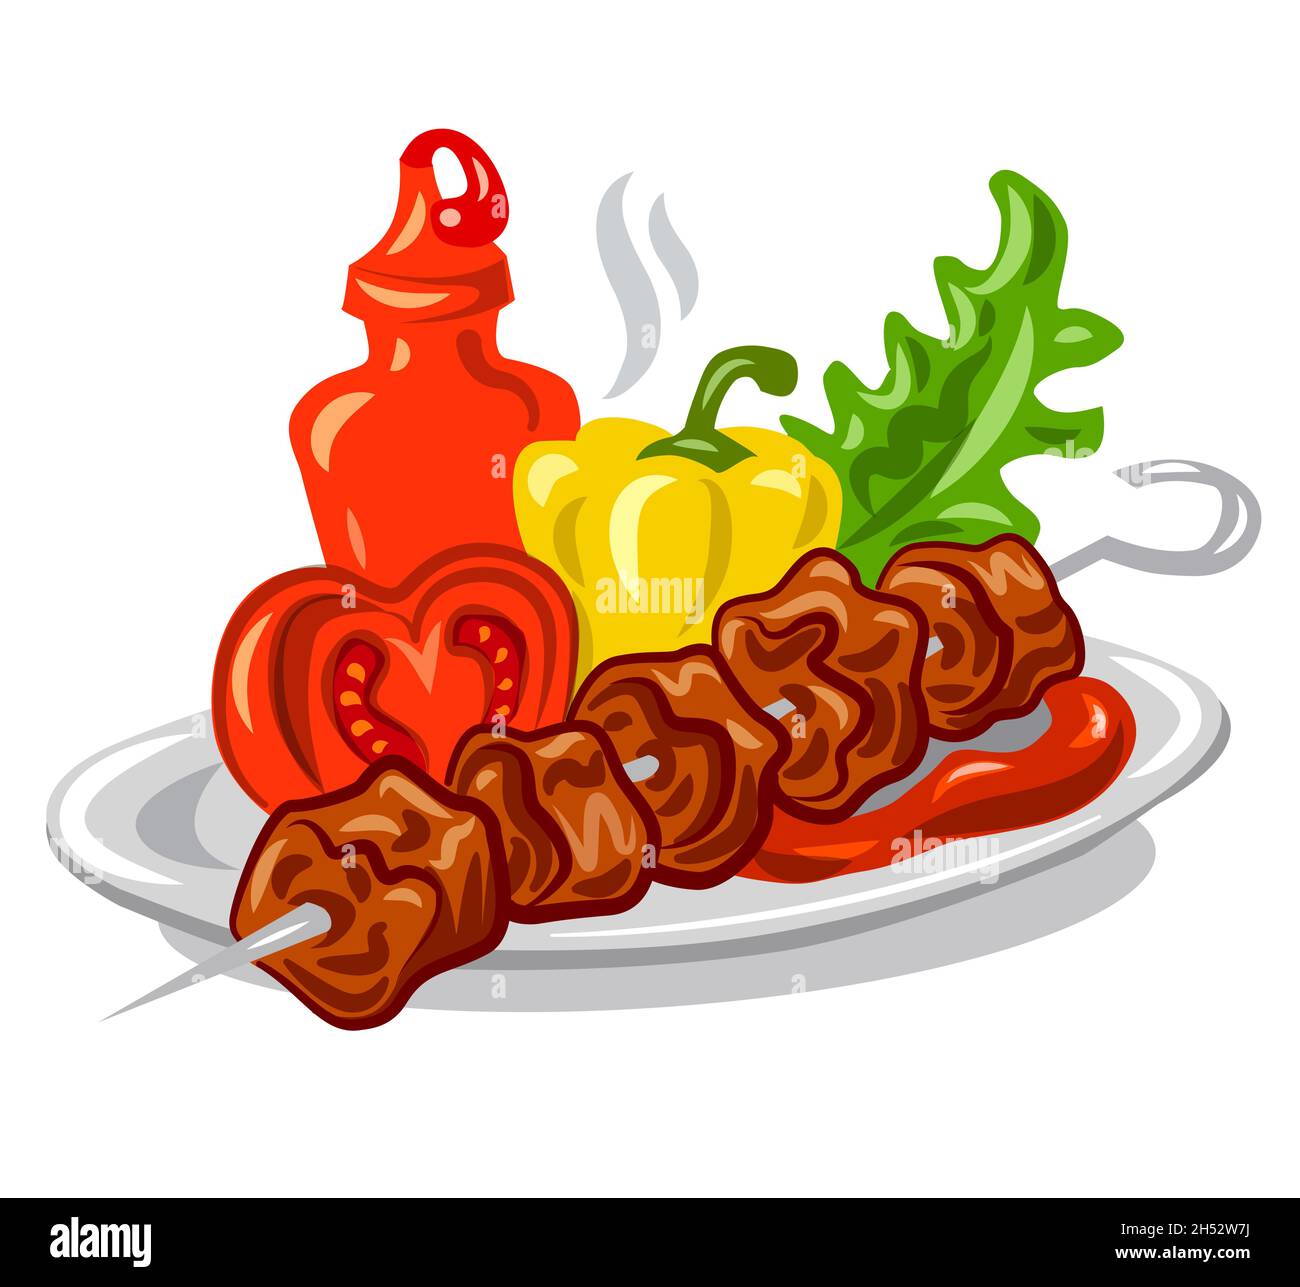 illustrazione del kebab caldo alla griglia con ketchup di pomodoro, verdure e insalata Illustrazione Vettoriale